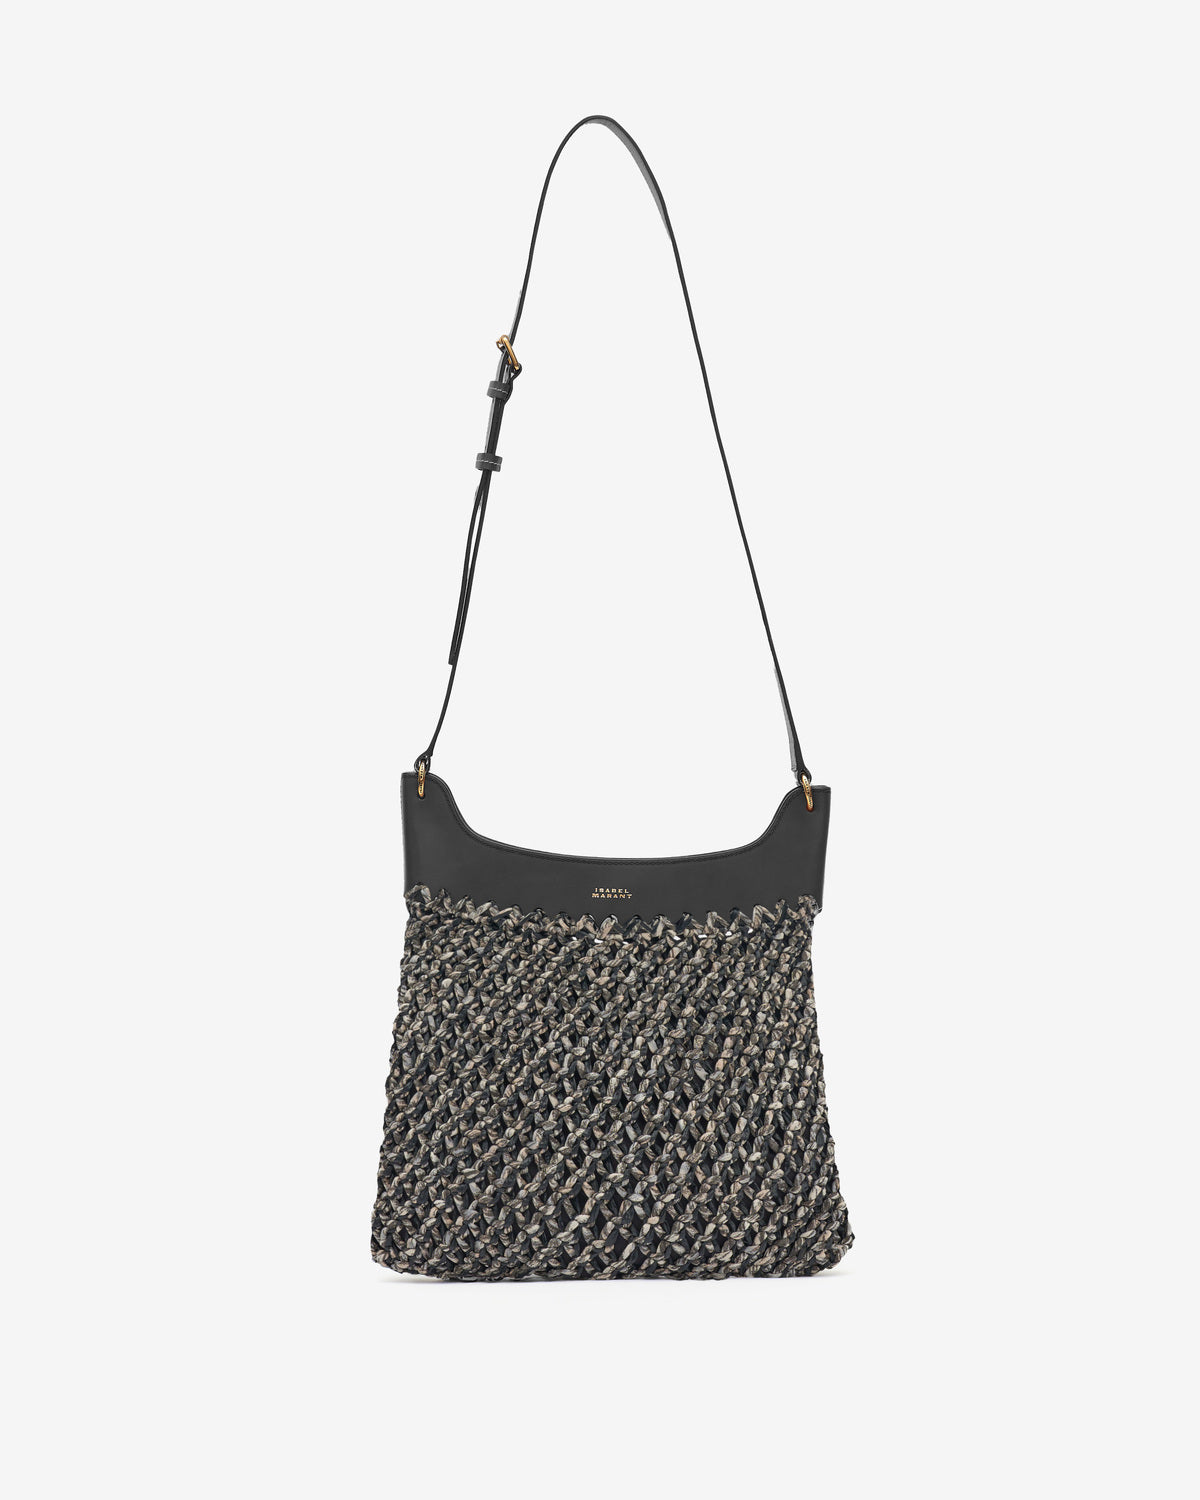 Amalfi hand-woven bag Woman Black 7